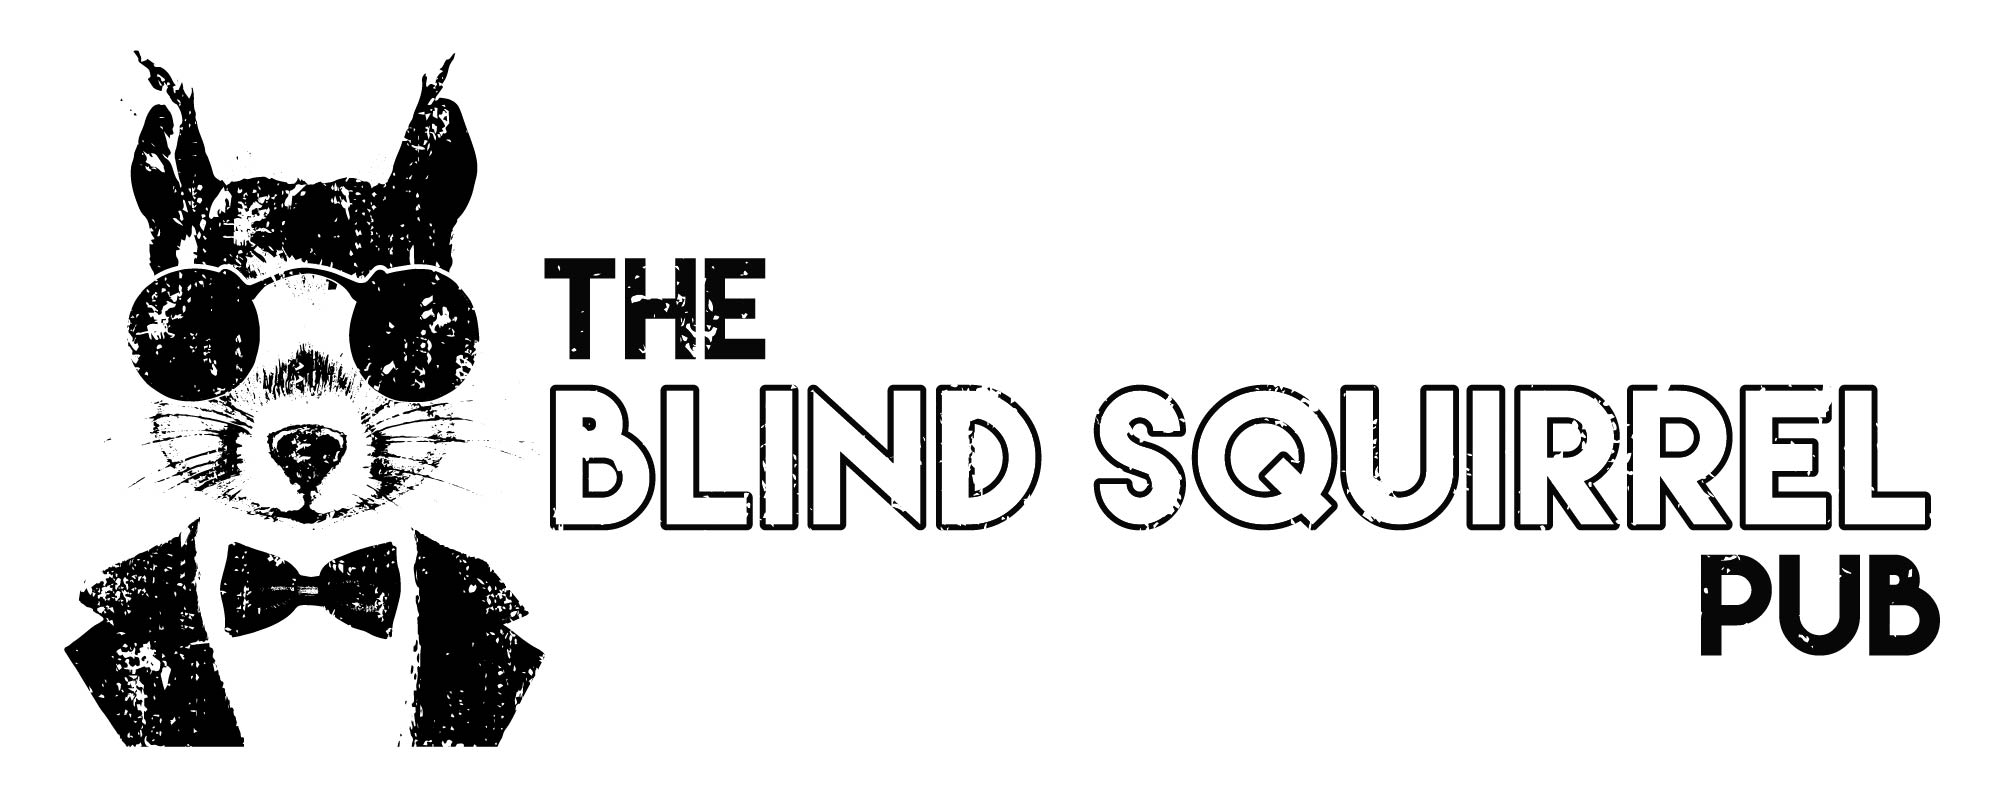 The Blind Squirrel Pub